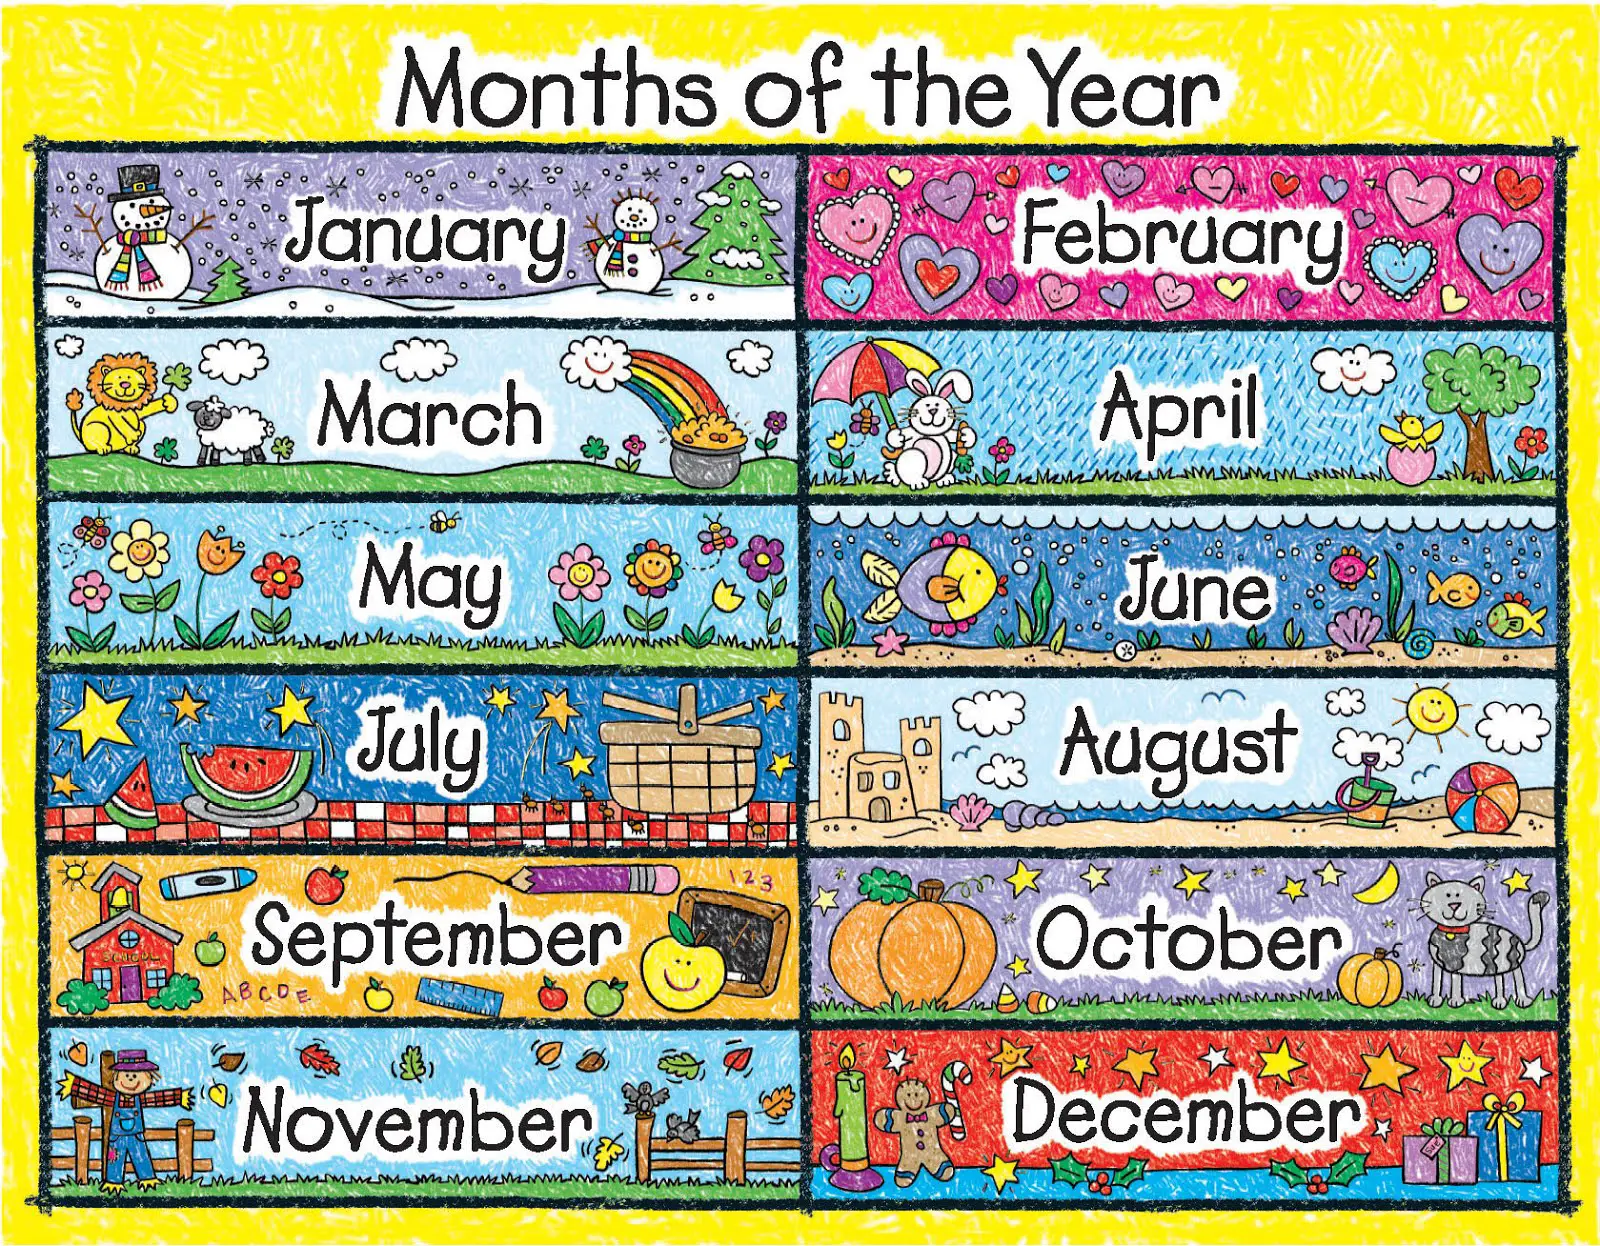 Calendario en ingles ¡Aprende a decir los días, meses y fechas en inglés!